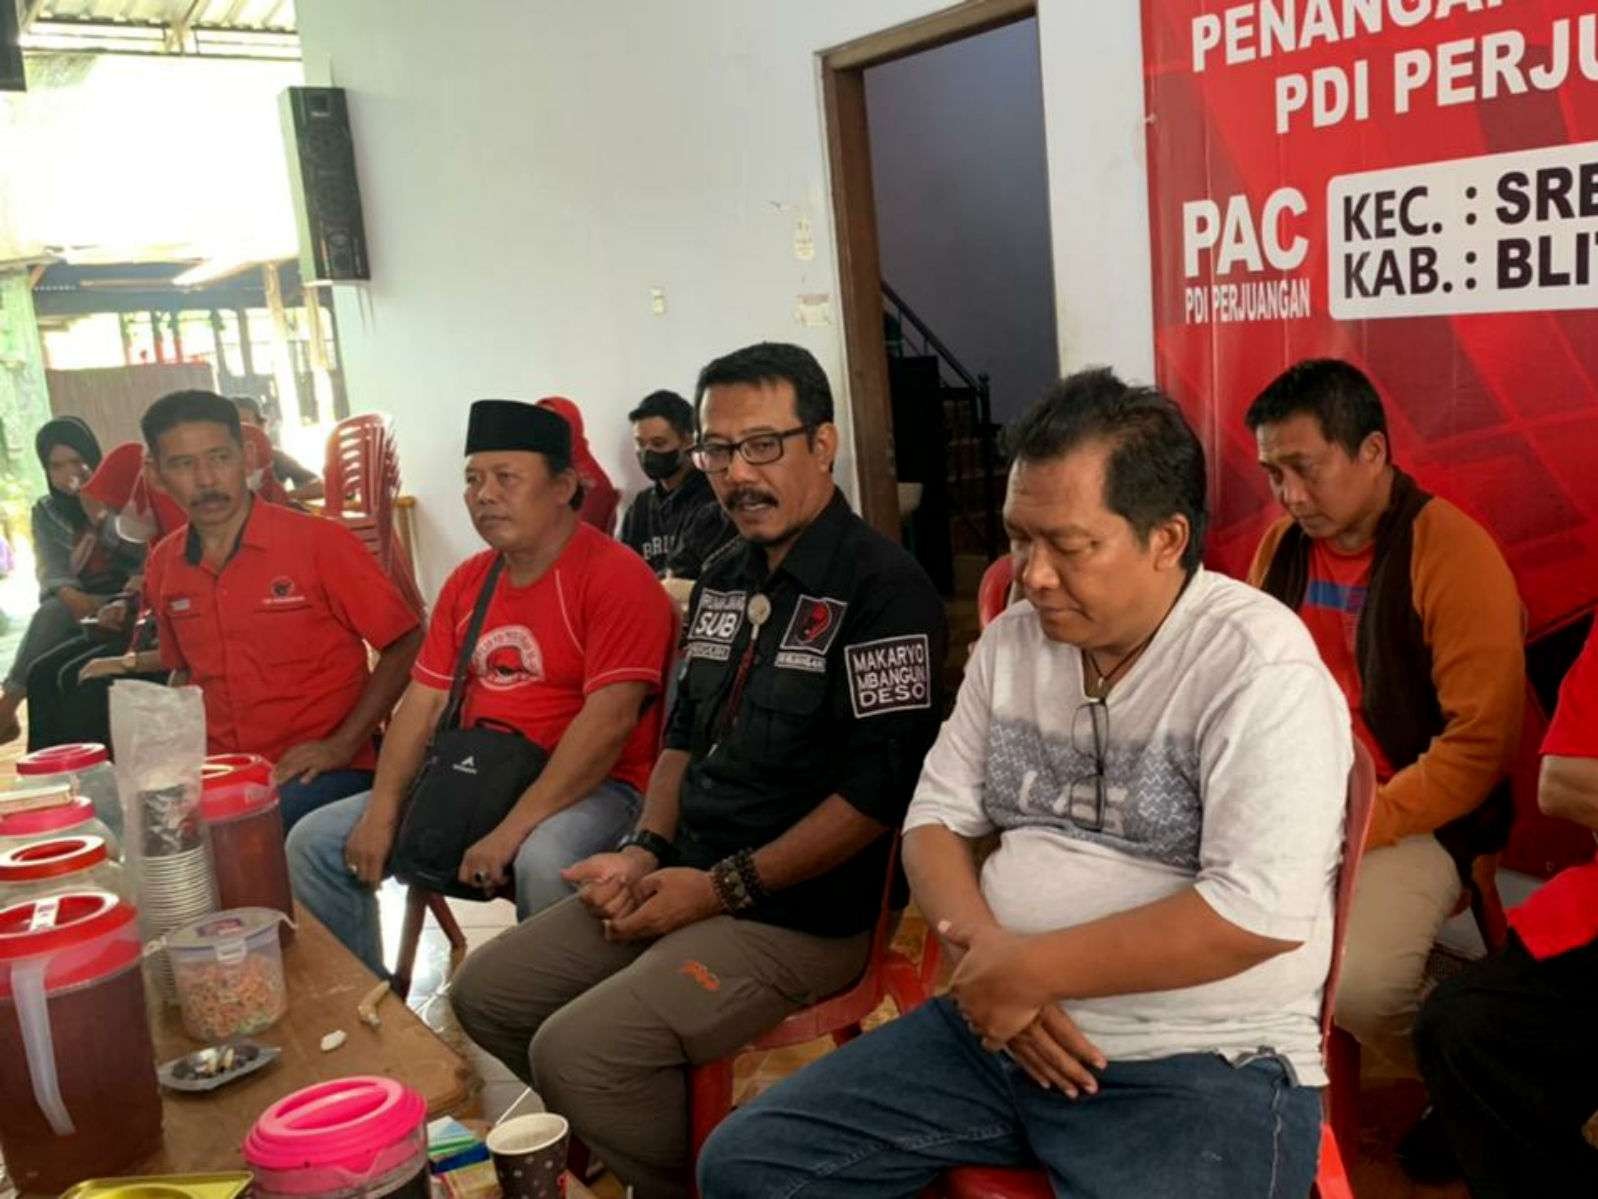 Supriadi alias Kuwat, salah satu kandidat Ketua DPC PDI Perjuangan Kabupaten Blitar yang hari ini sedang menjalani fit and proper test di DPP PDI Perjuangan. (Foto: Ist)